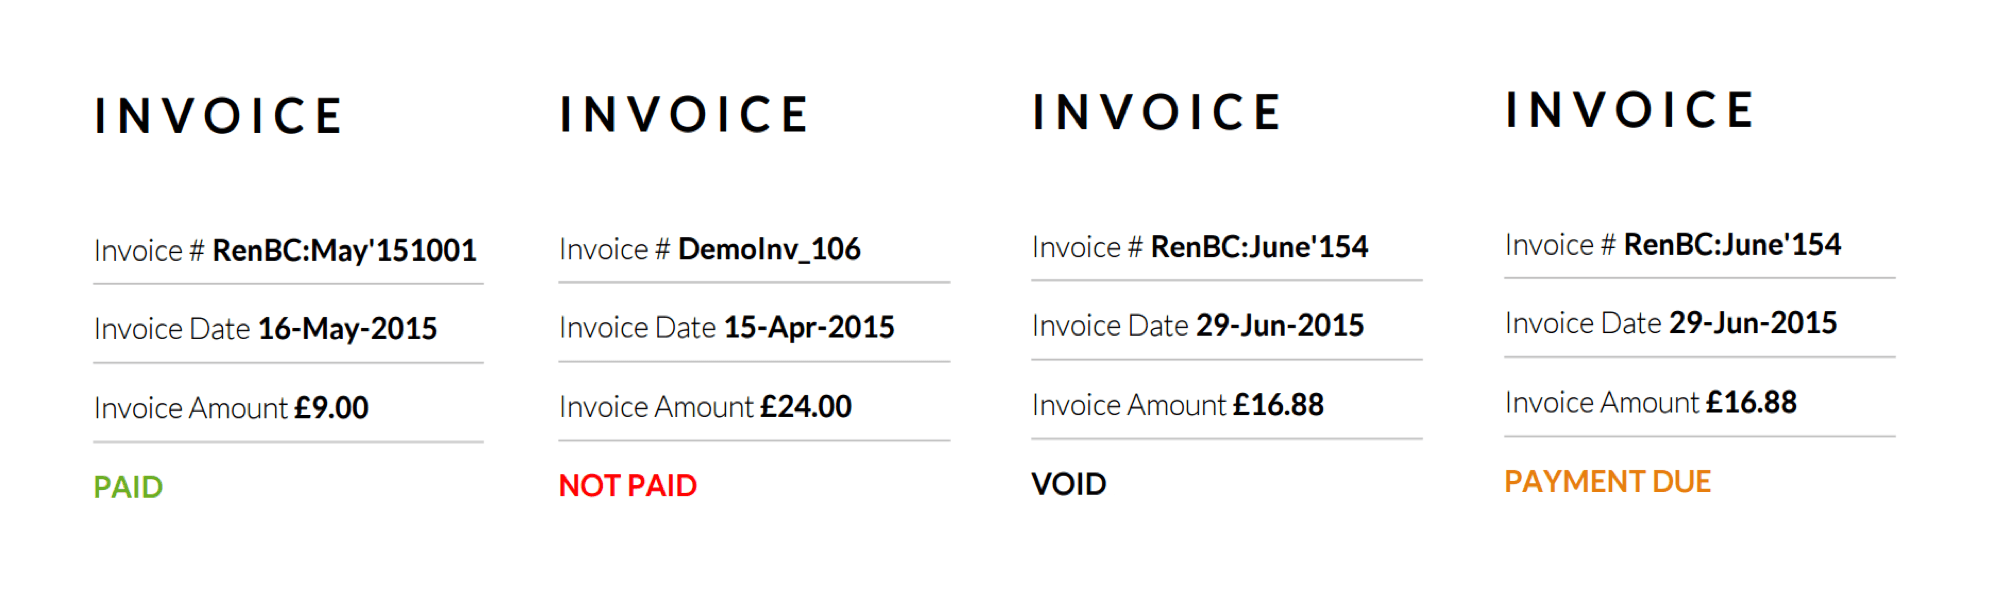 Invoice Status